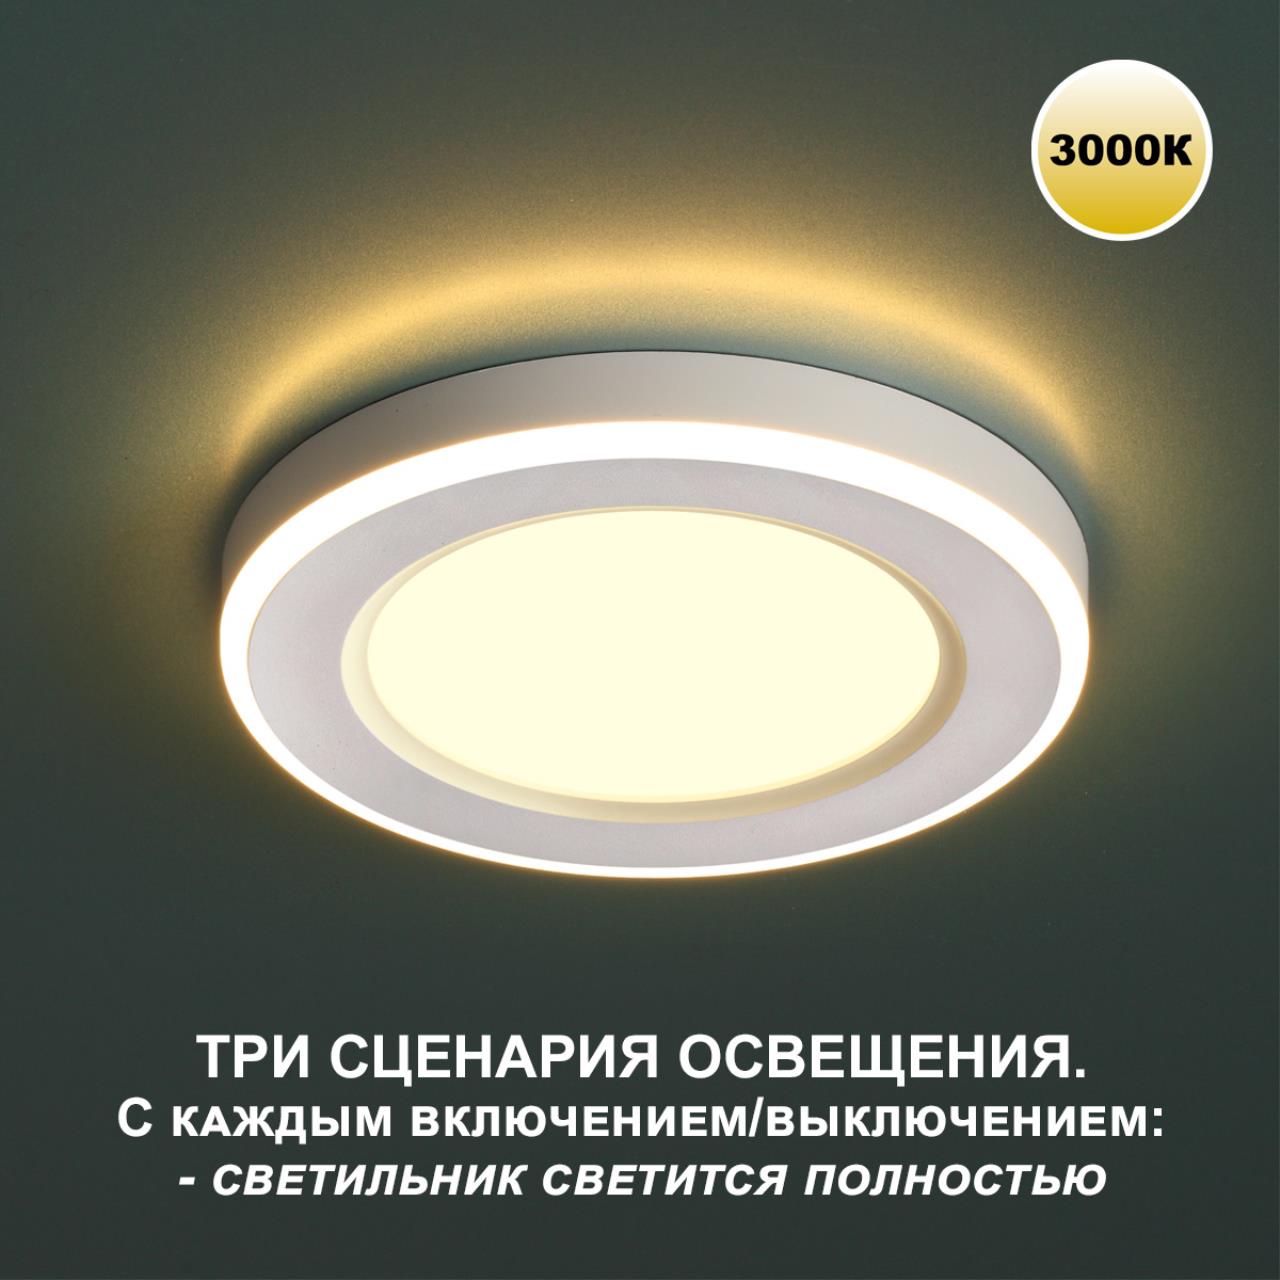 Трёхрежимный встраиваемый светодиодный светильник Novotech SPAN 359018